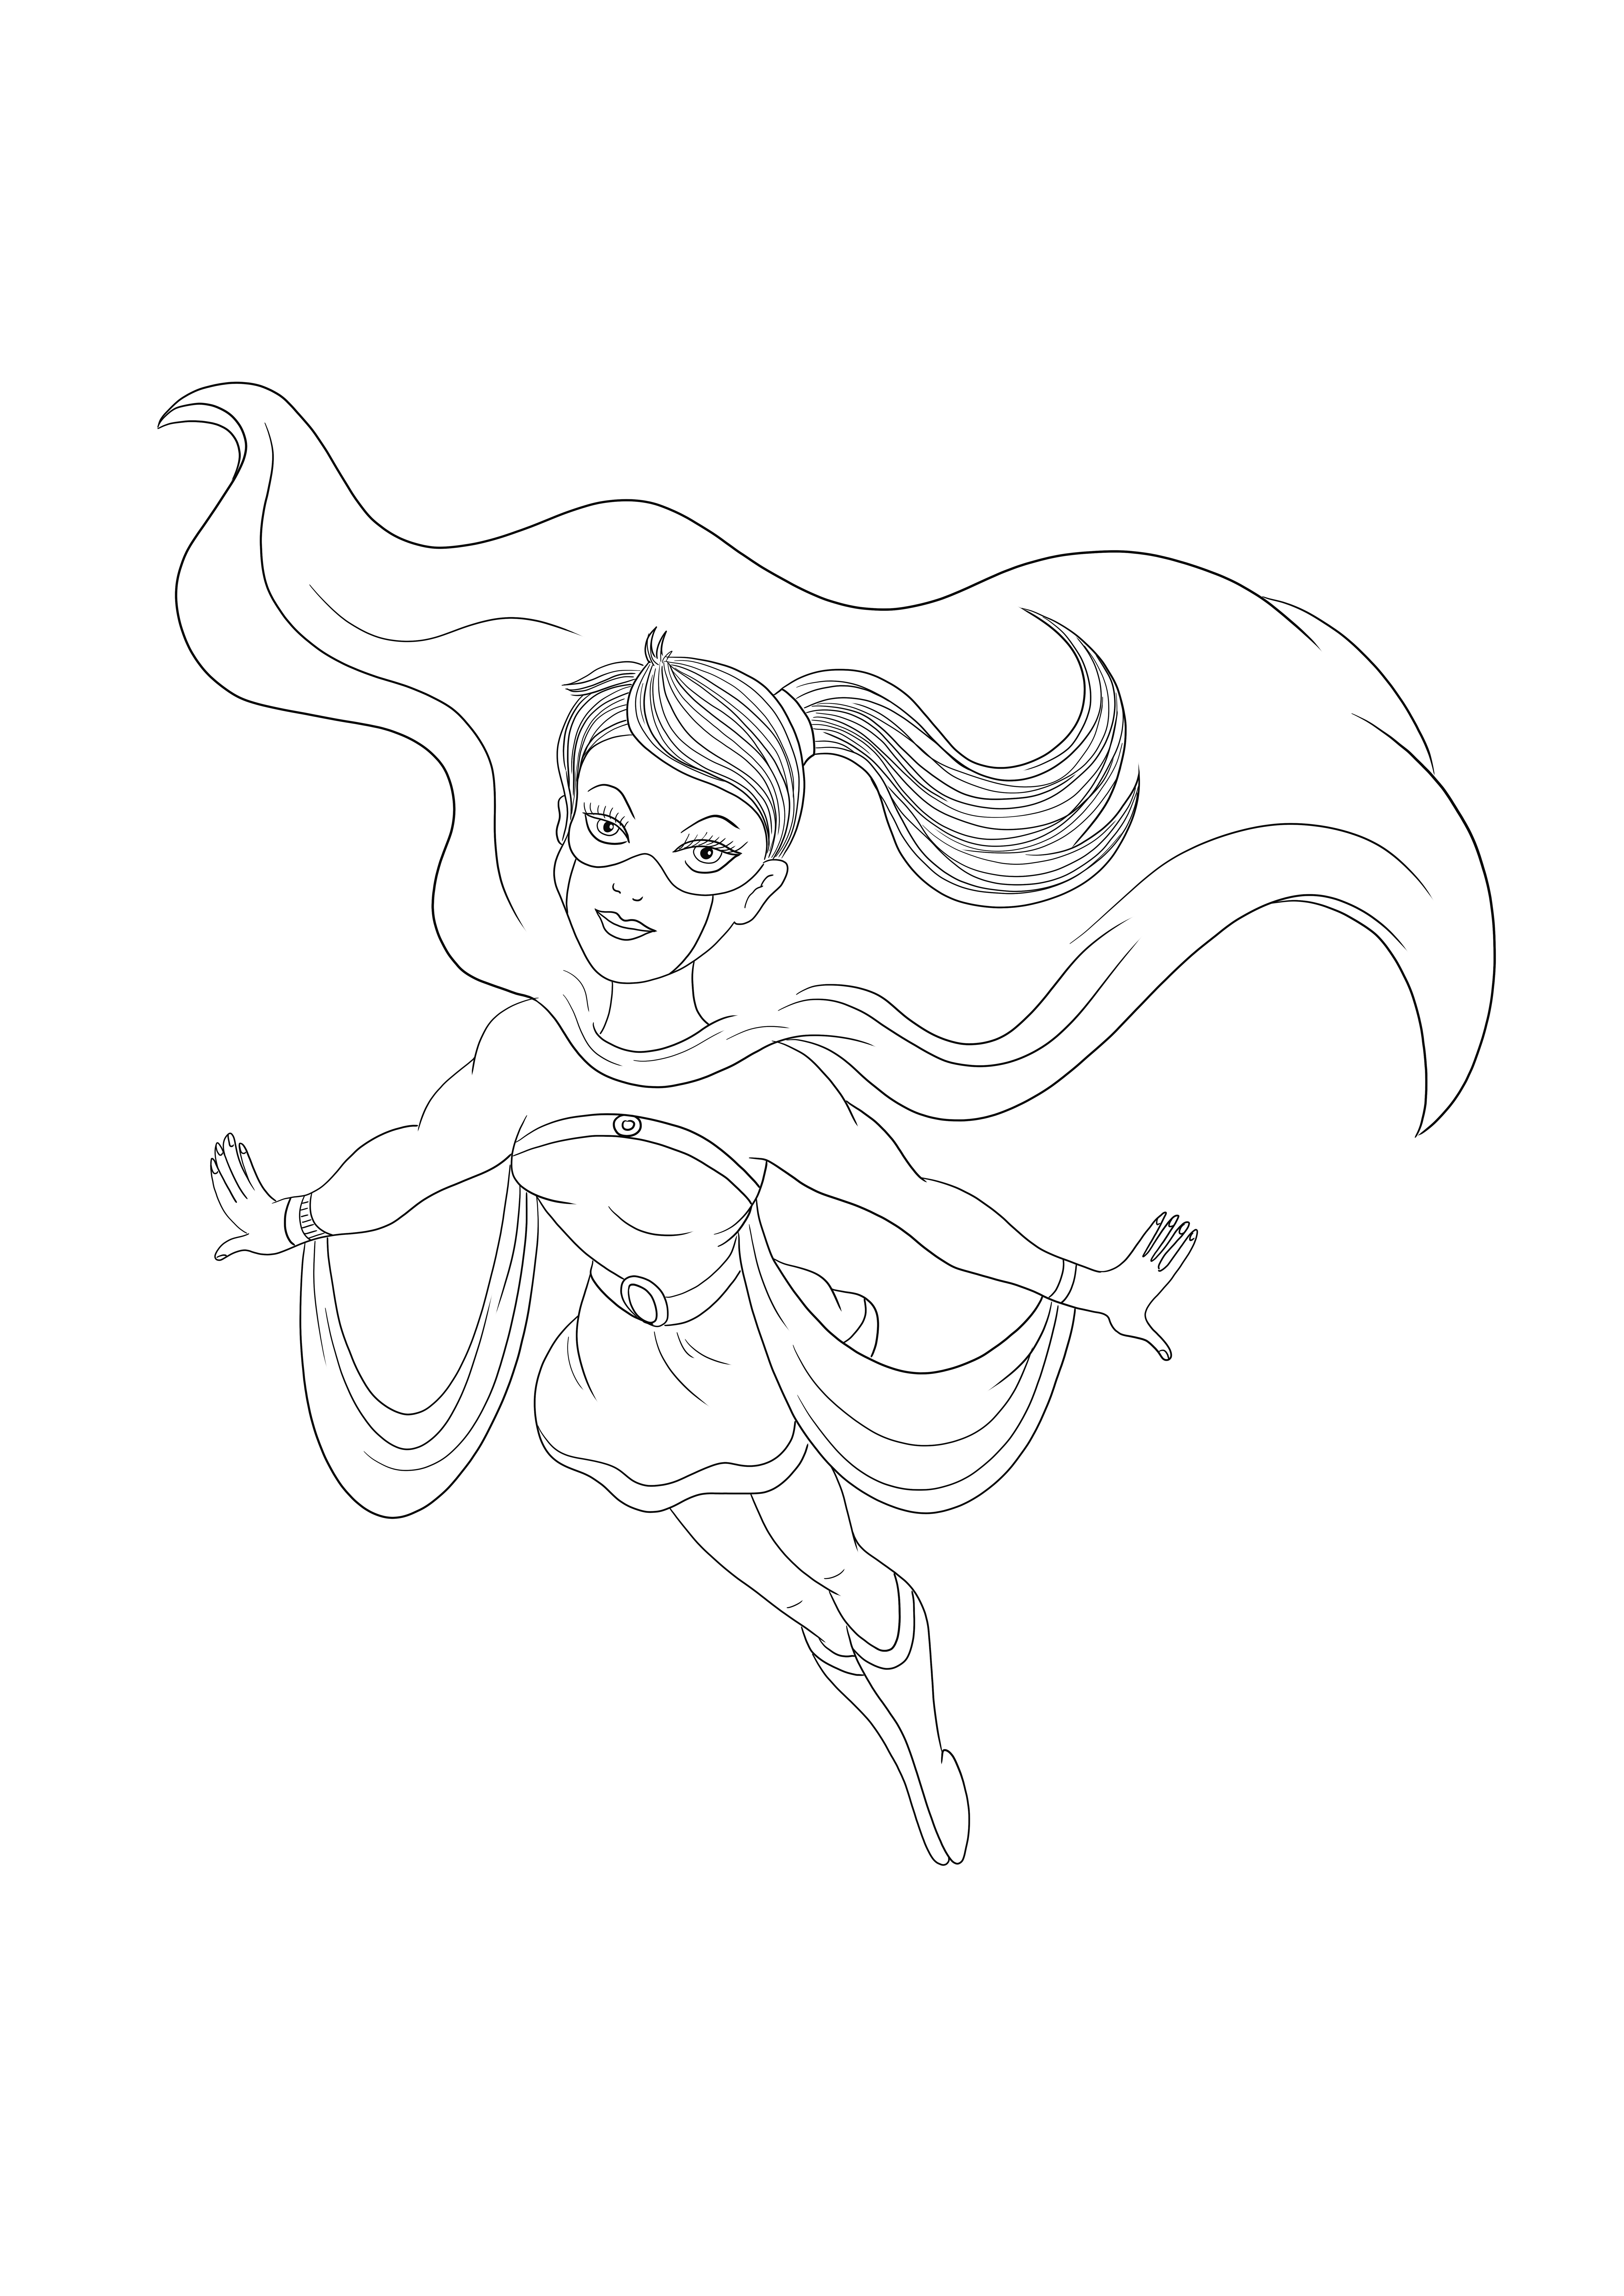 Supergirl terbang untuk menyelamatkan dan menunggu untuk diwarnai secara gratis